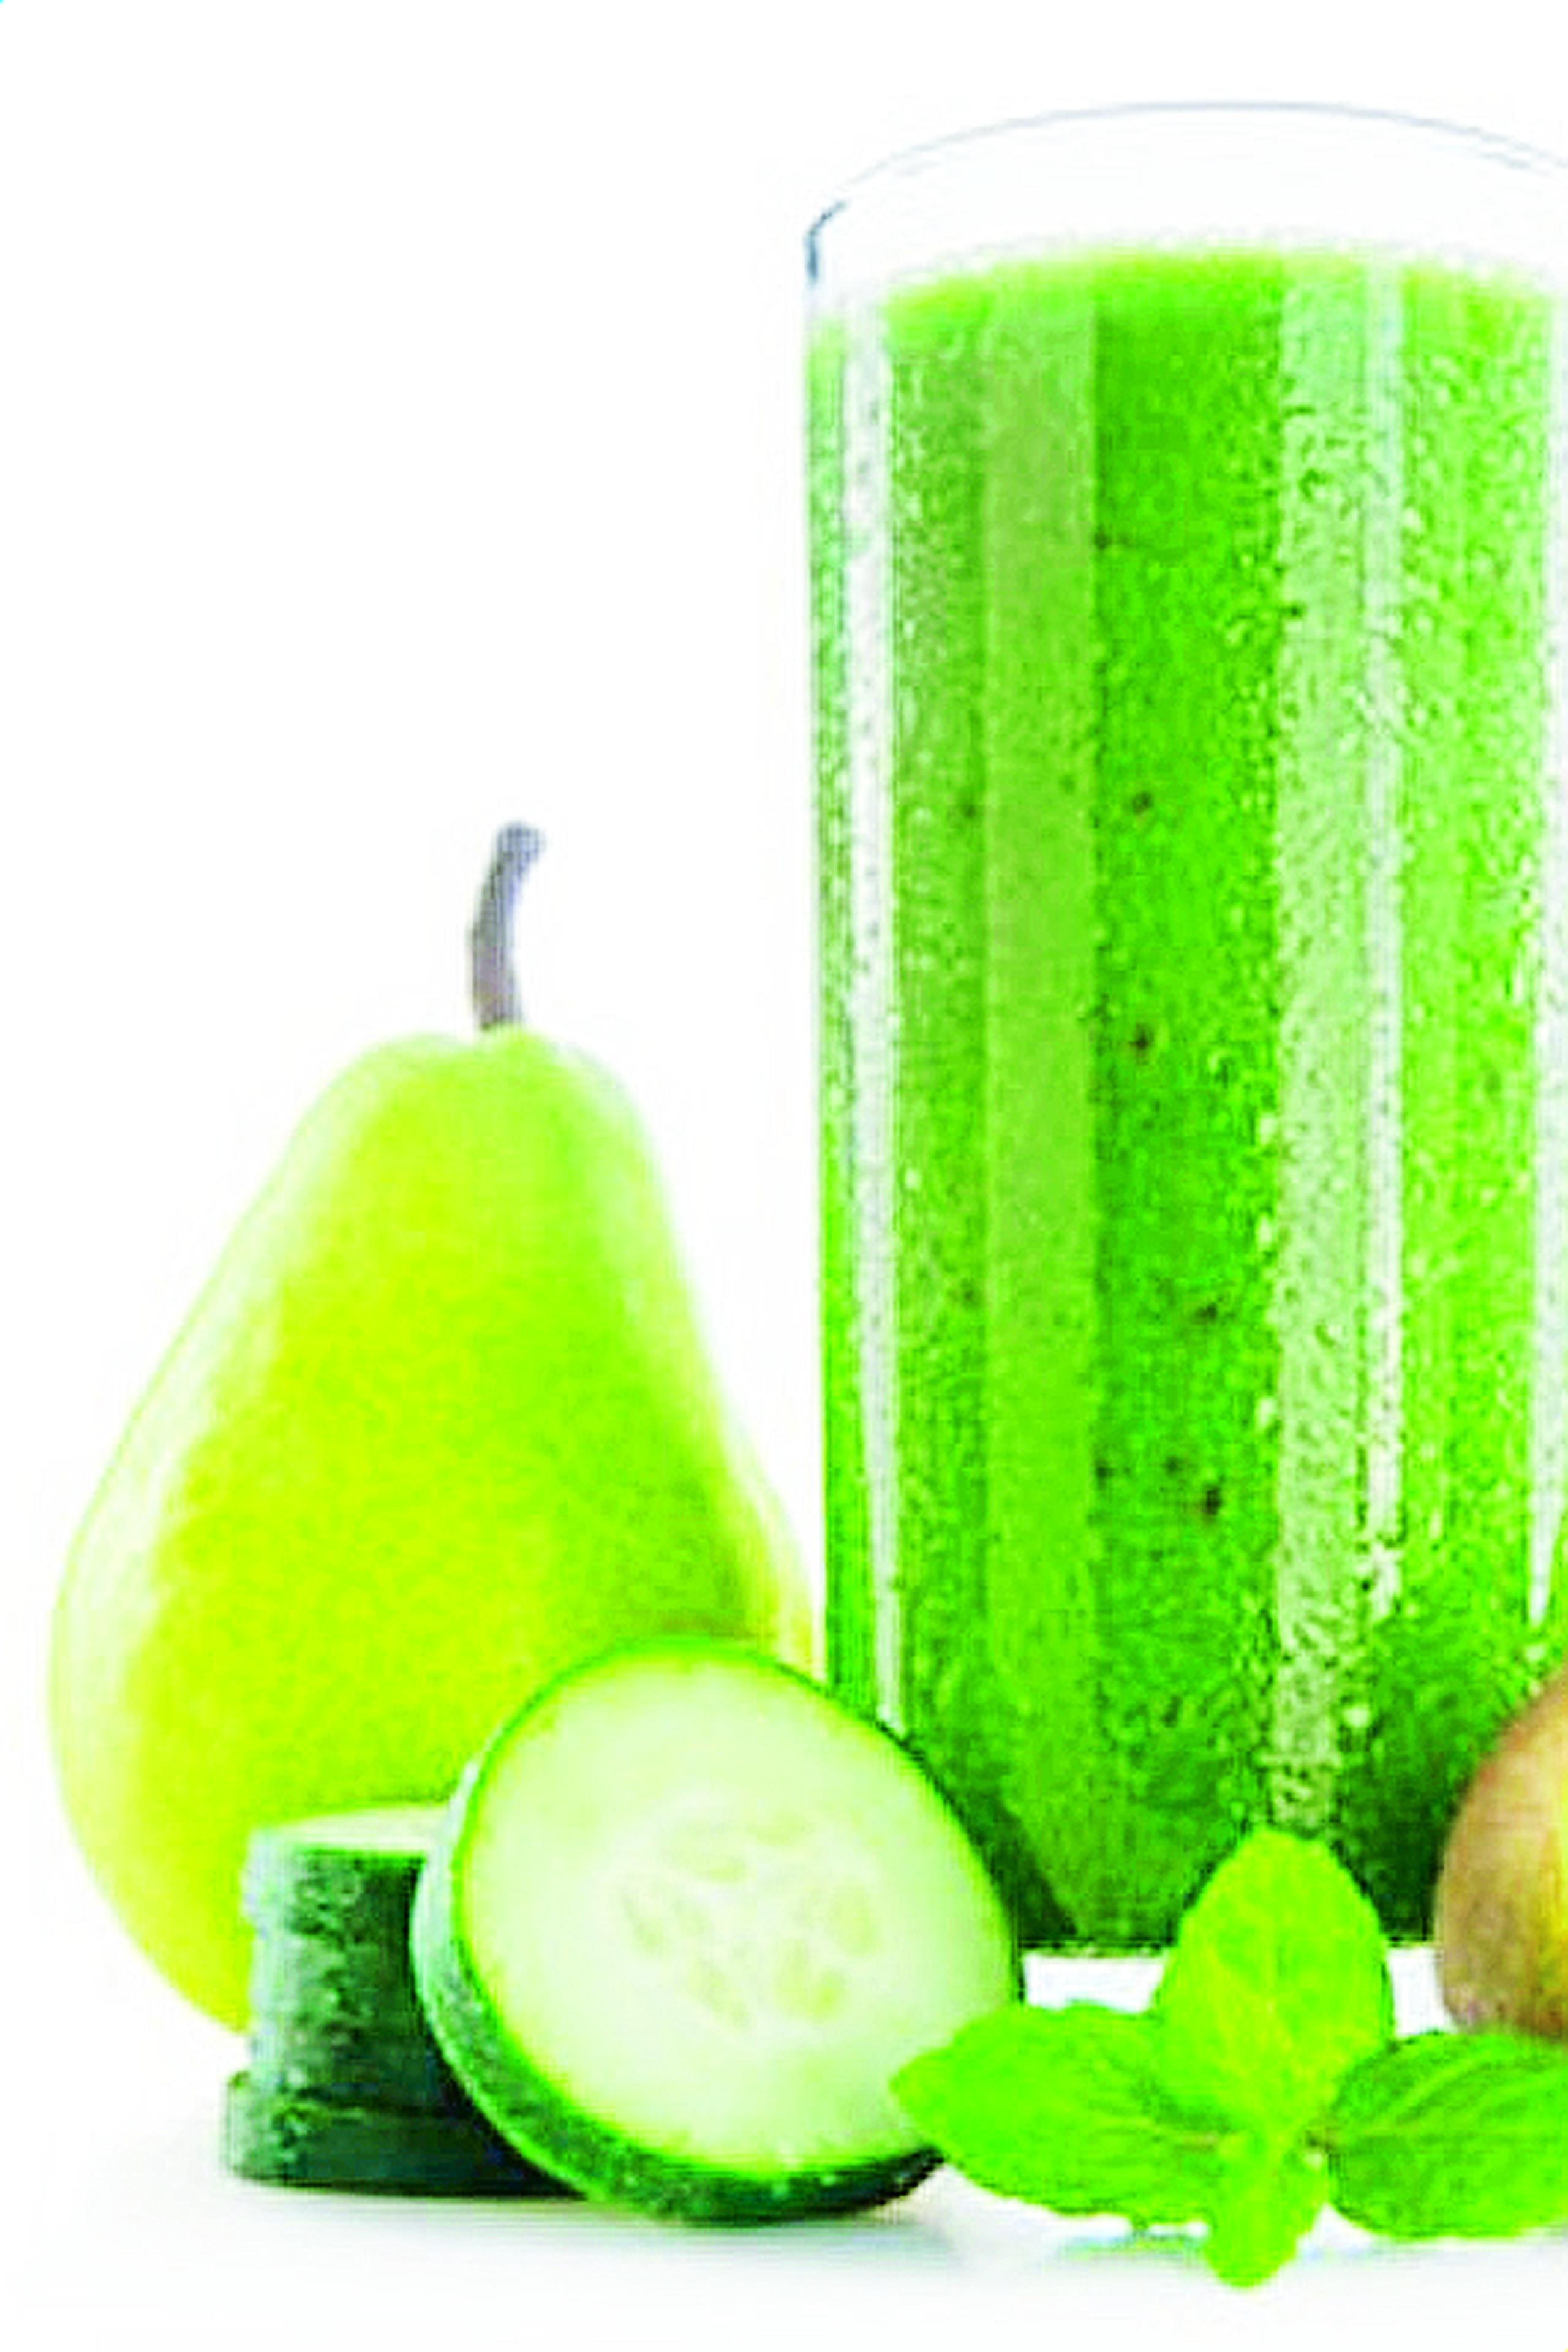 Según los expertos en nutrición, mientras más verde el jugo, mejor.